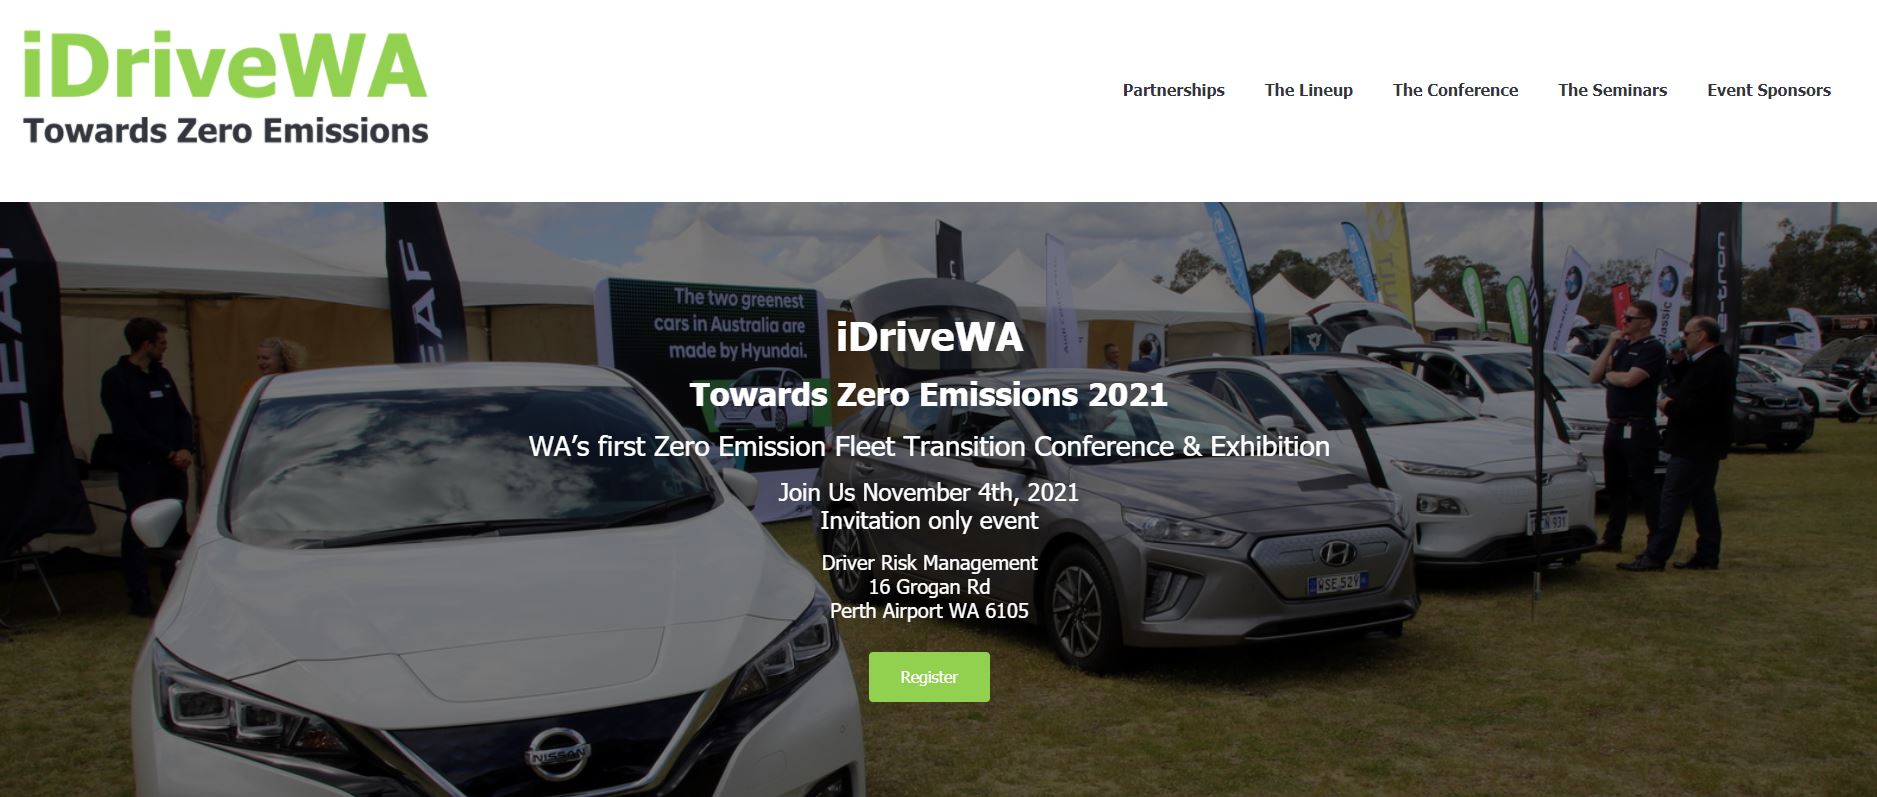 iDrive WA - WA’s first Zero Emission Fleet Transition Conference & Exhibition